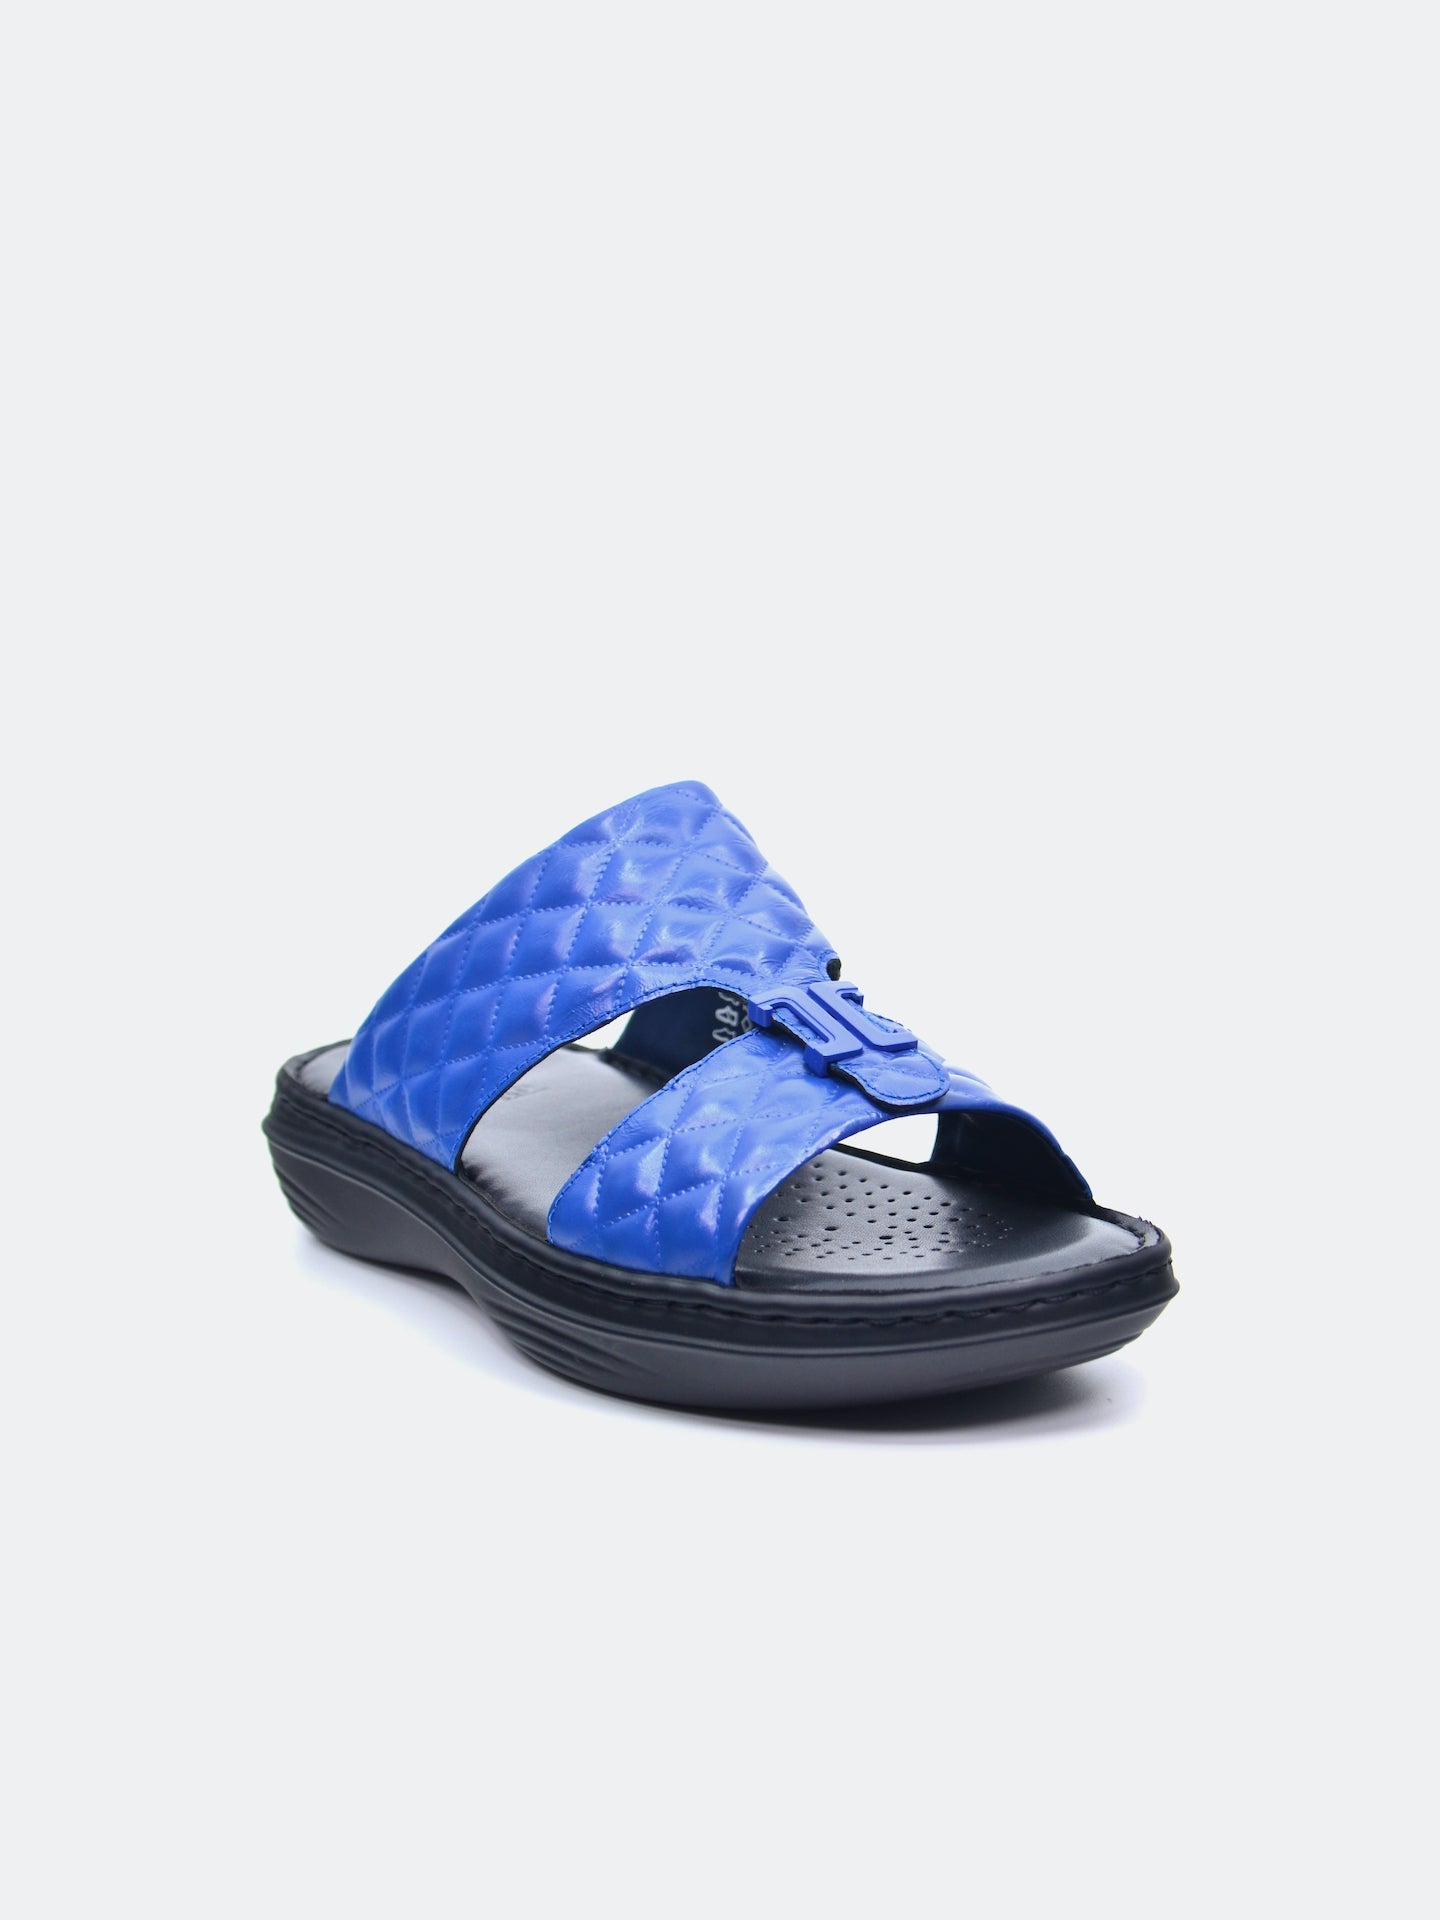 Barjeel Uno 21410-4 Men's Arabic Sandals #color_Blue